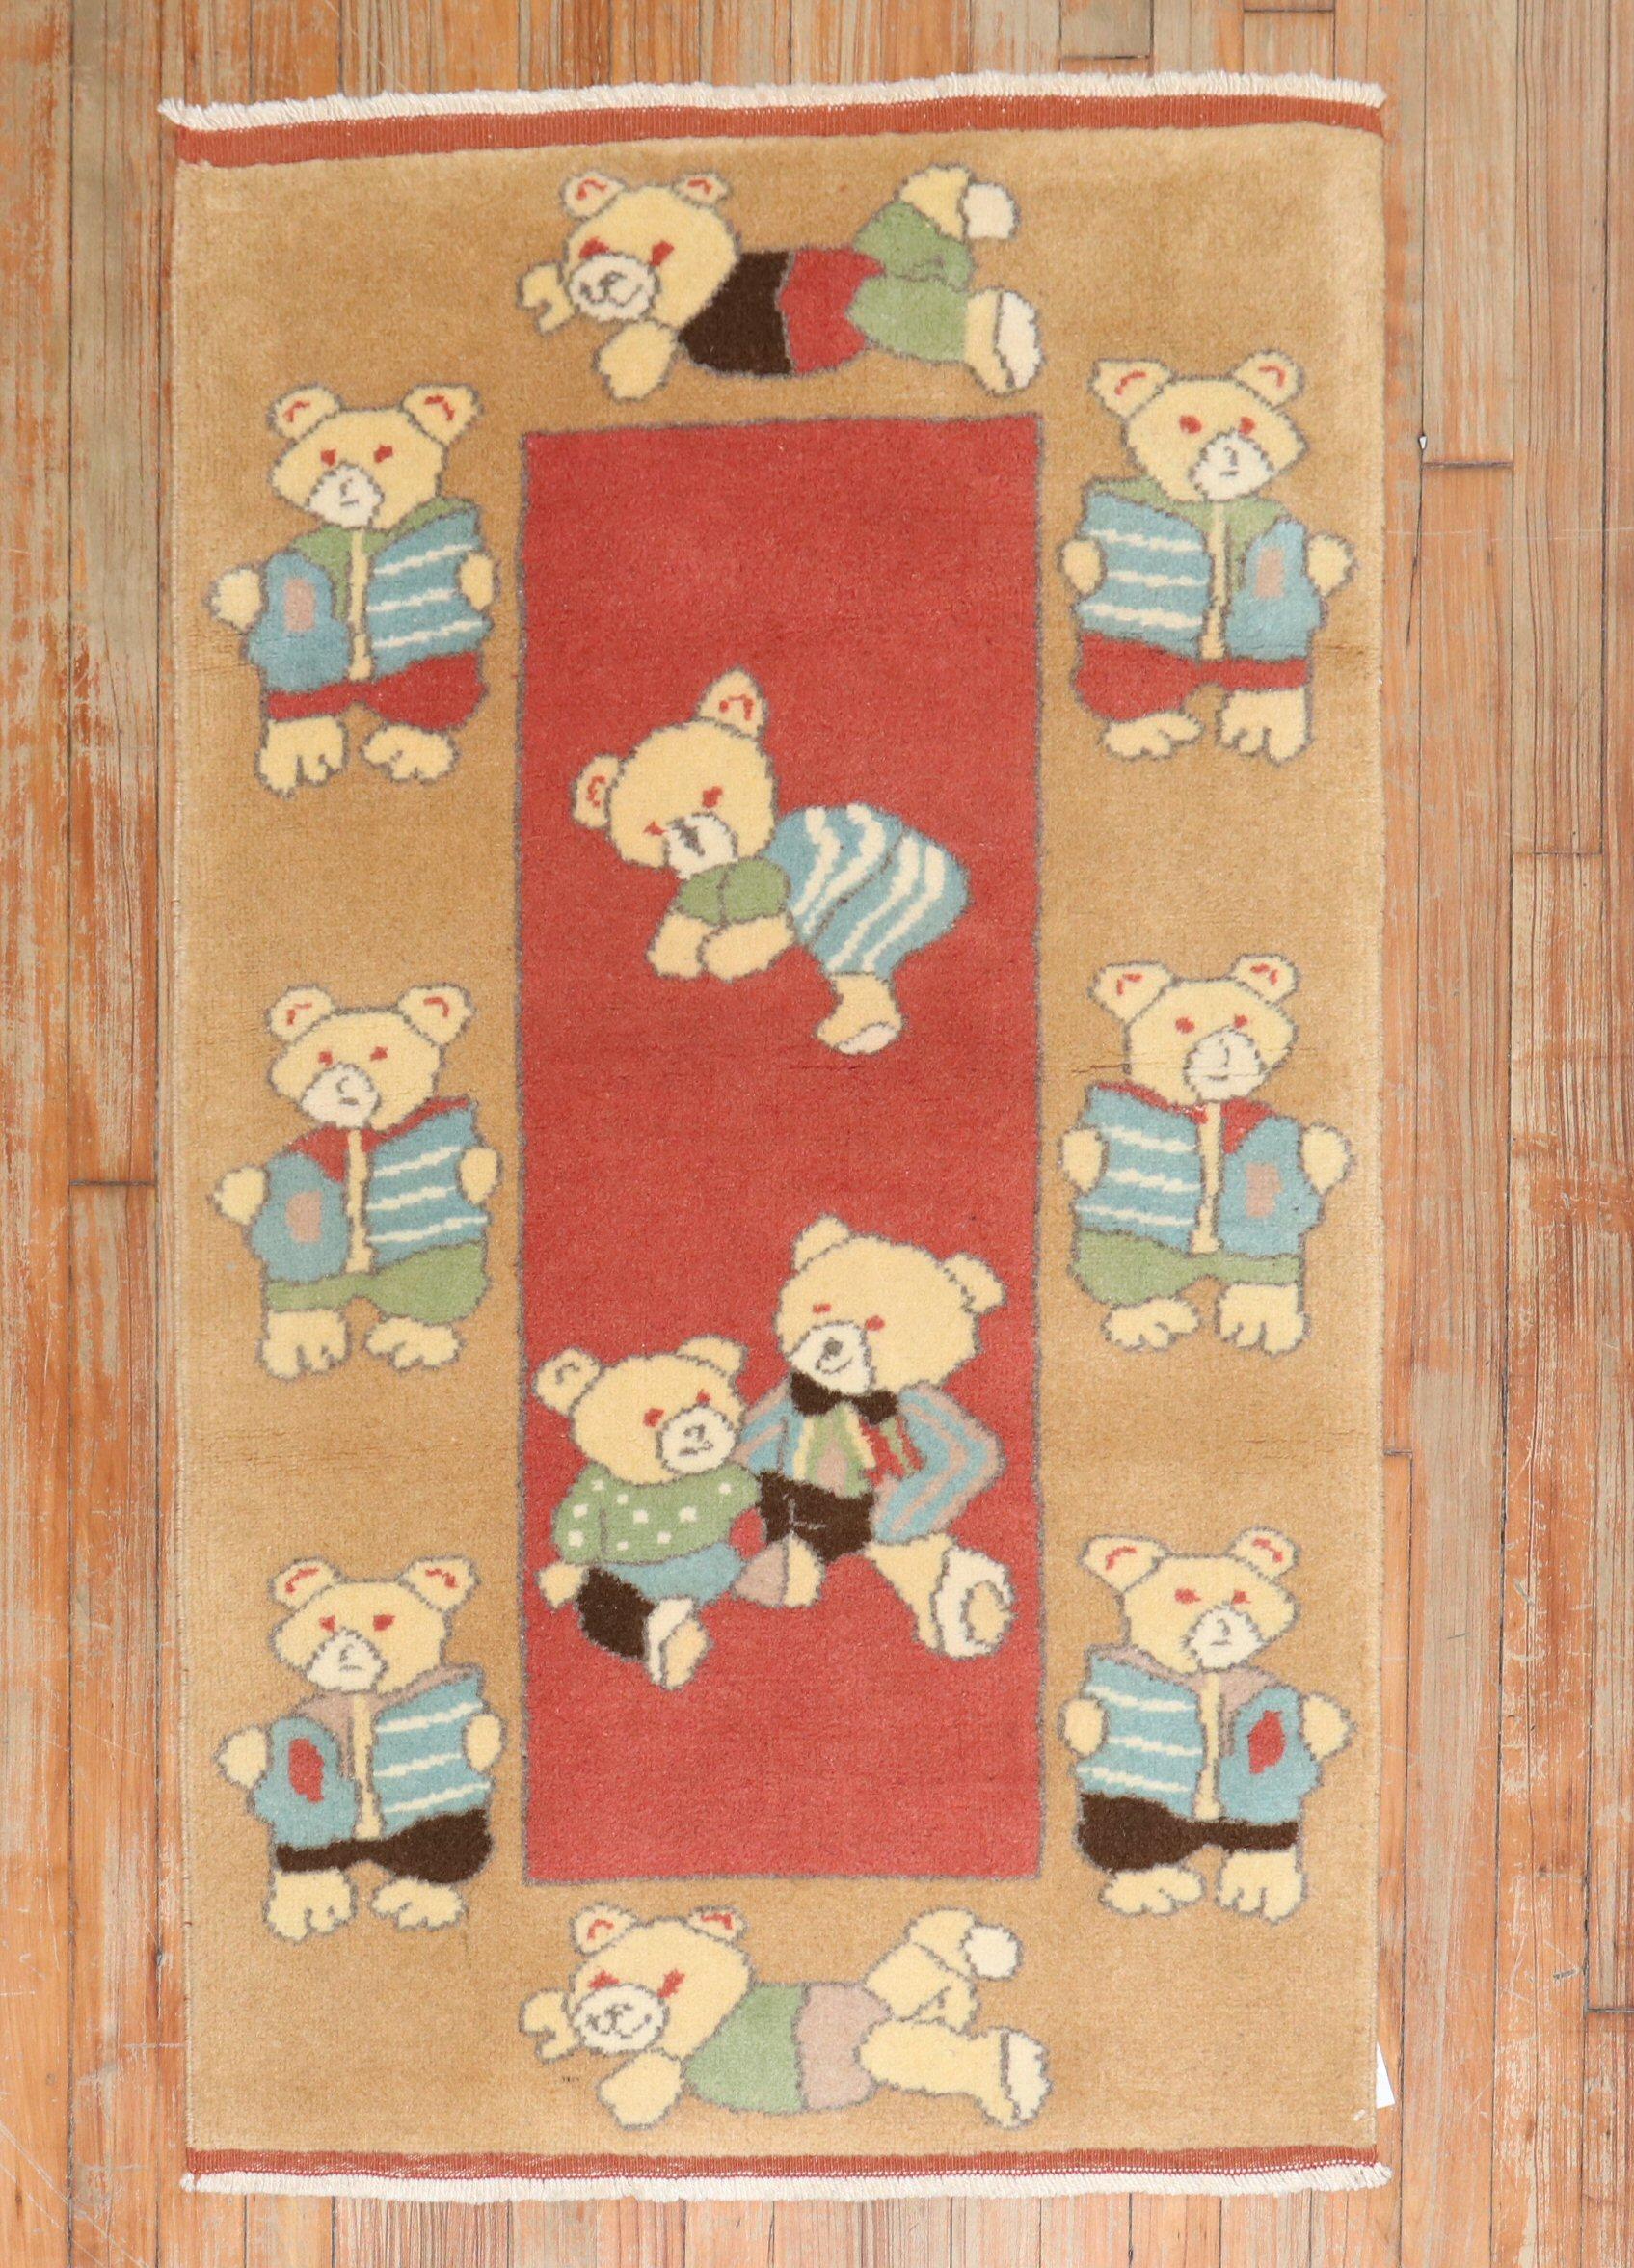 Einzigartiger Konya-Teppich aus dem späten 20. Jahrhundert, auf dem Teddybären abgebildet sind.

Maße: 2'6'' x 4'5''.